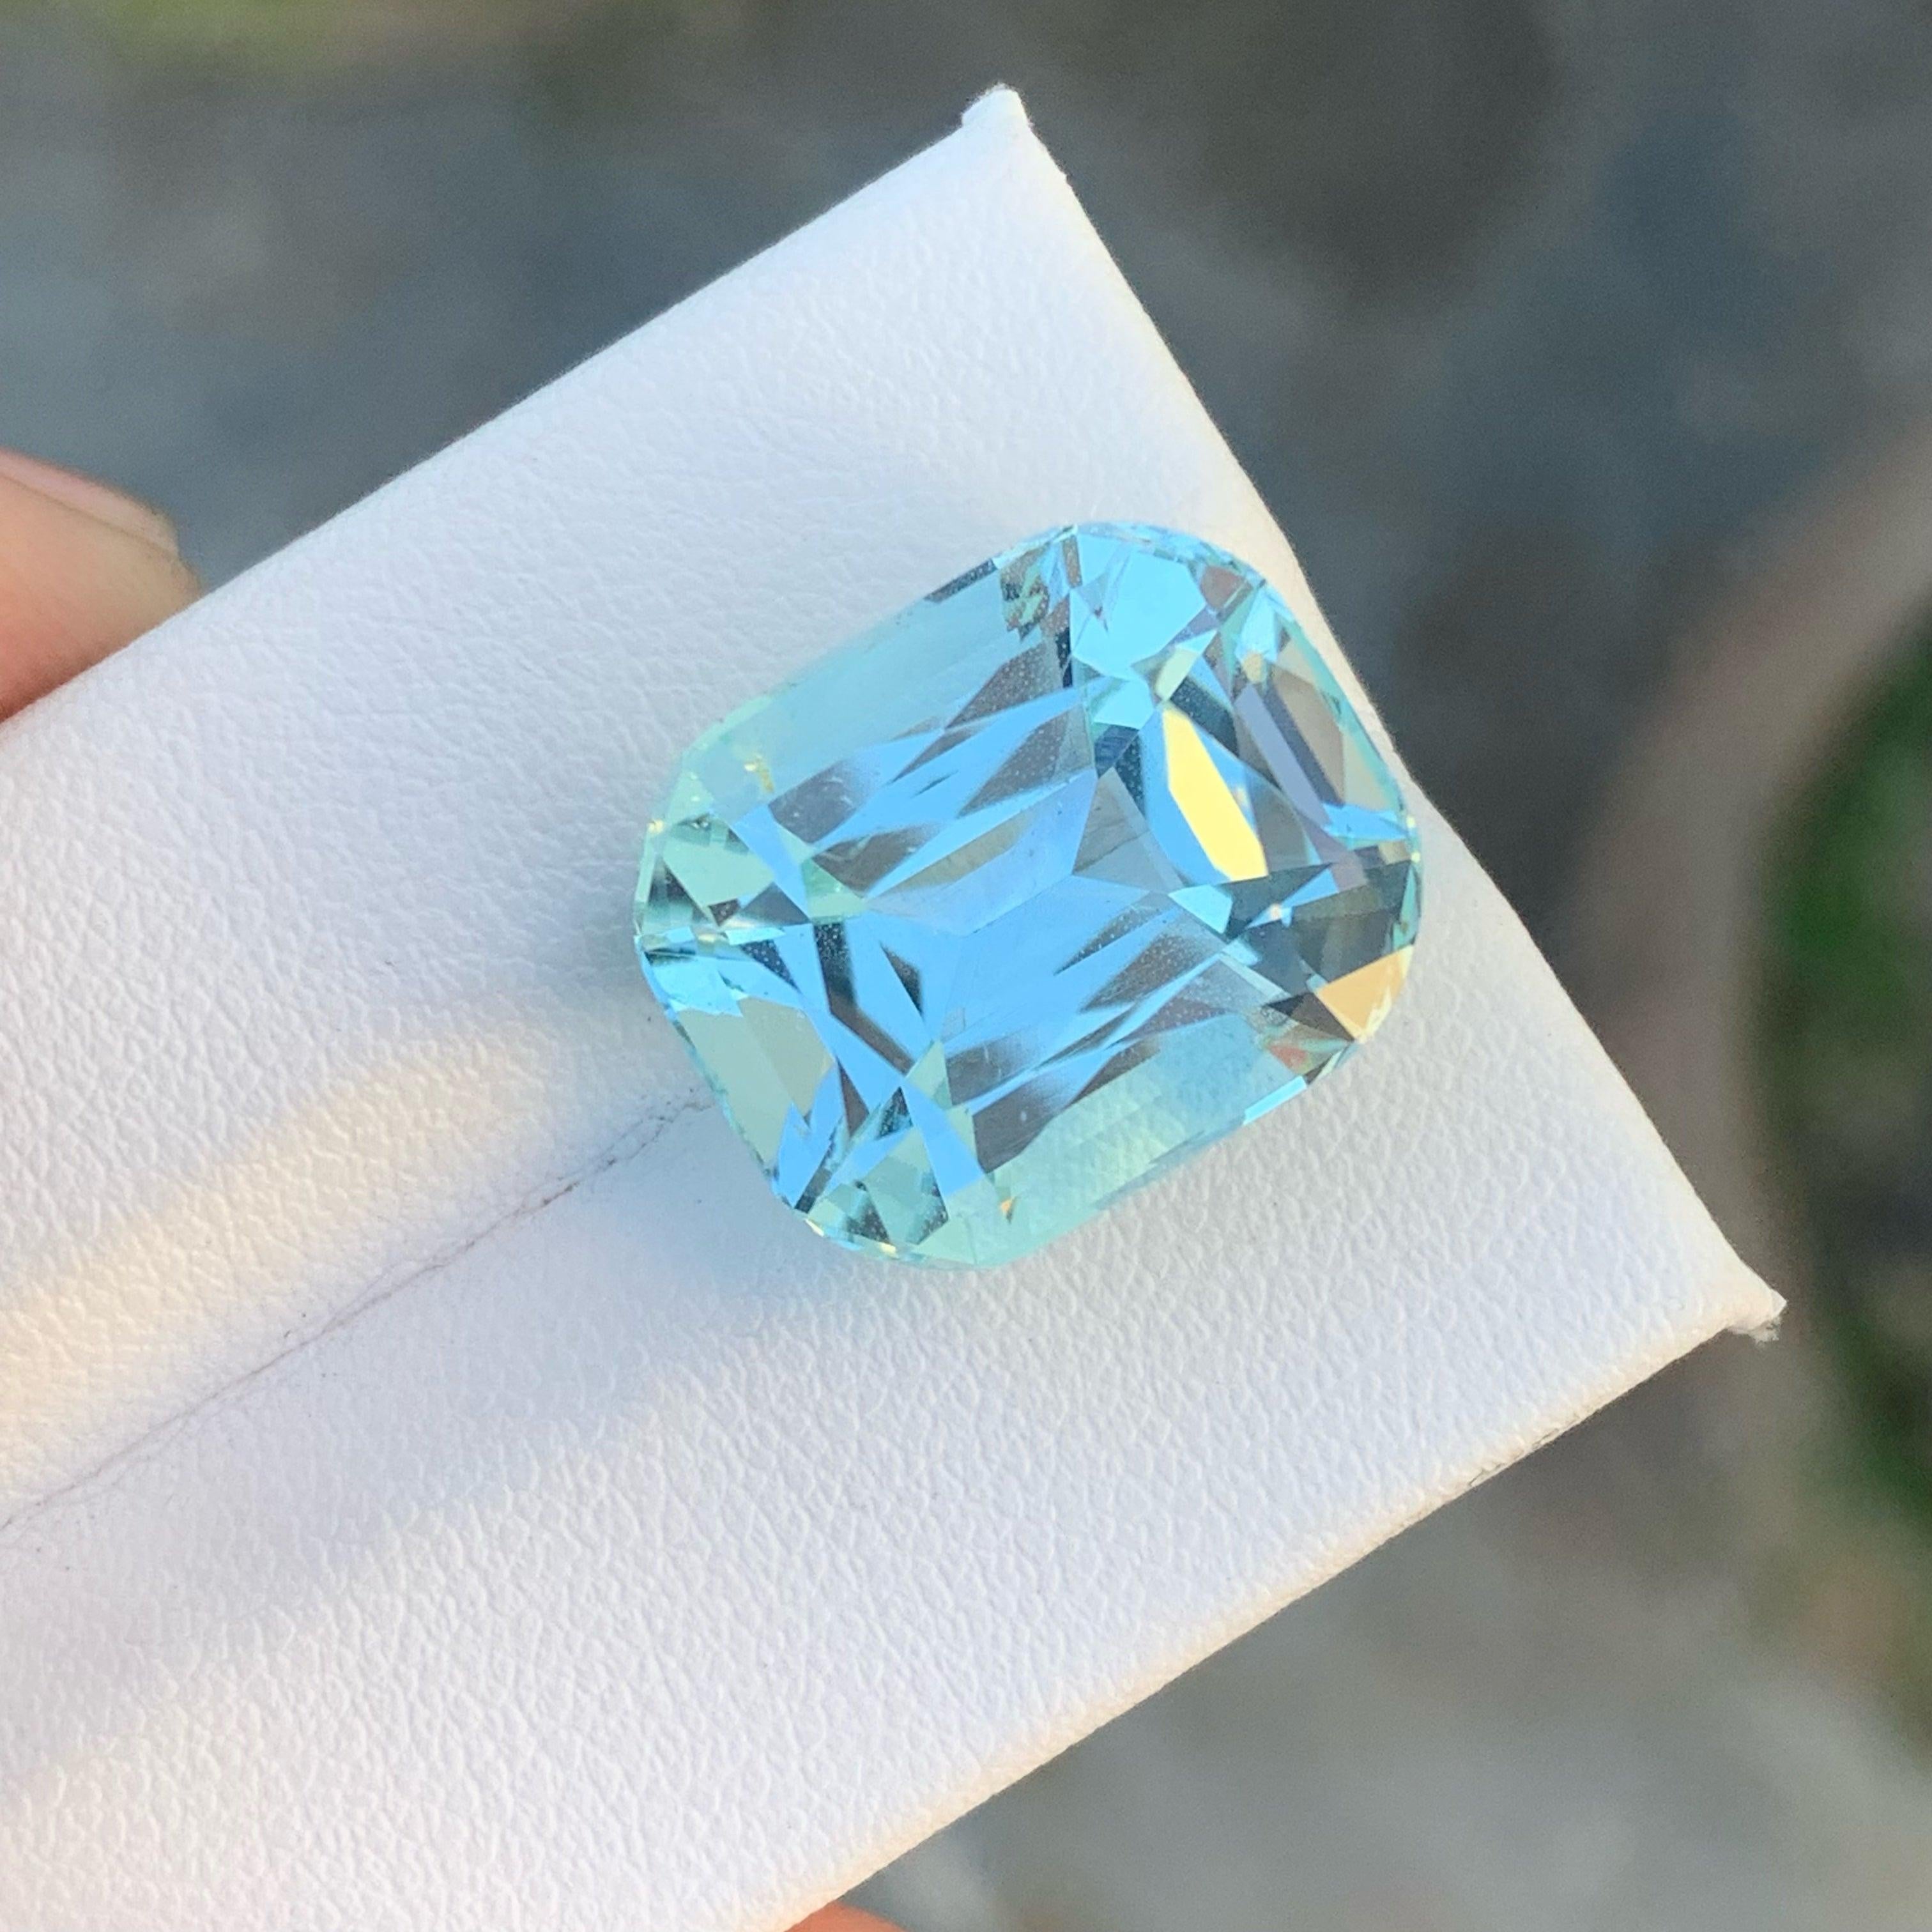 aquamarine gemstone price in pakistan